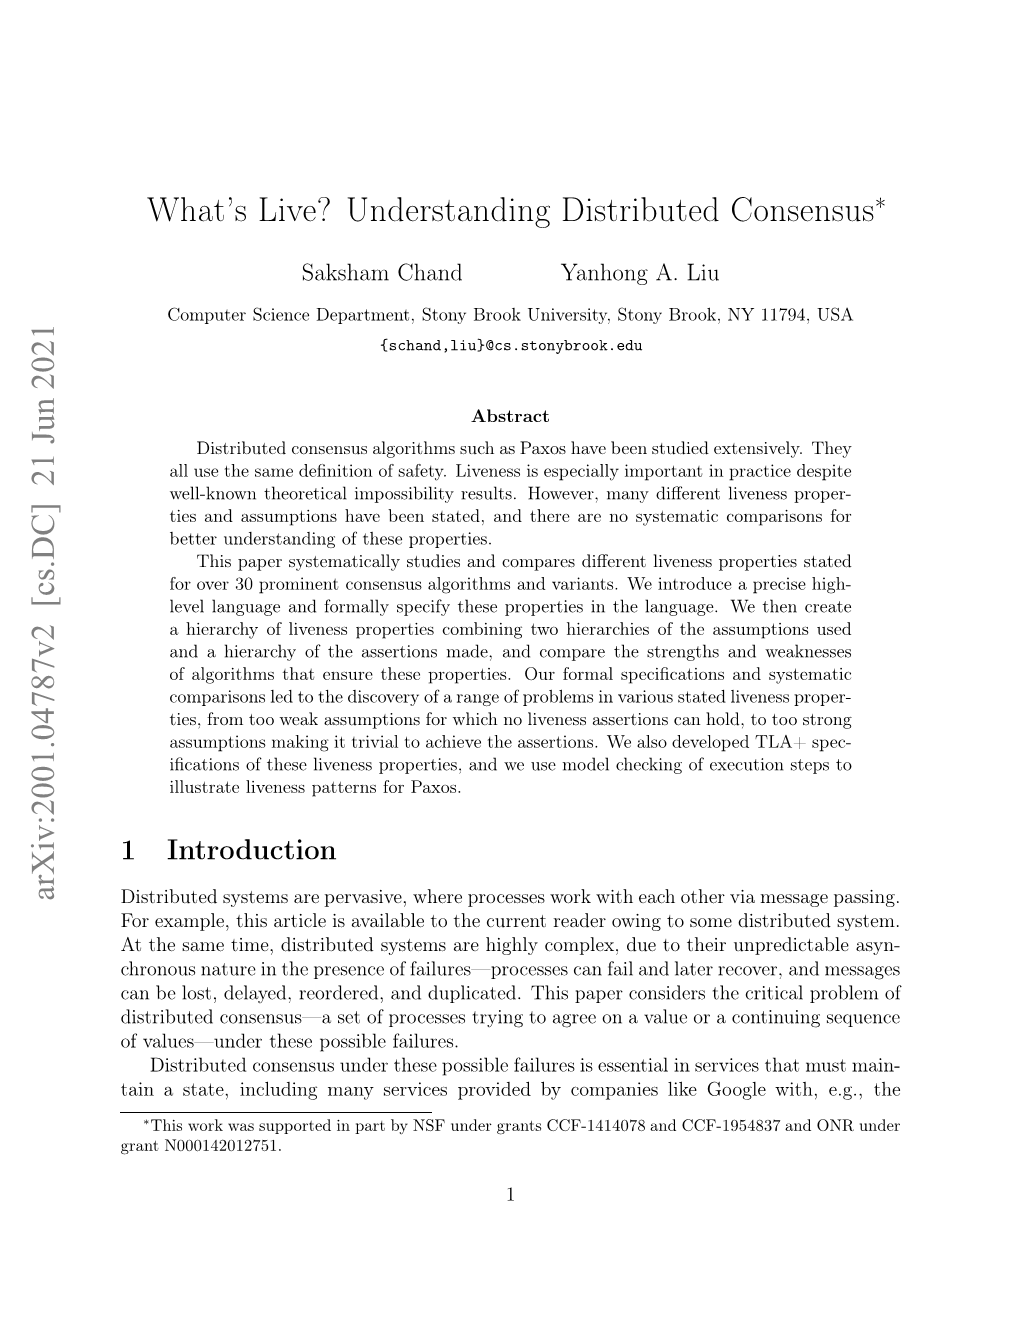 Understanding Distributed Consensus